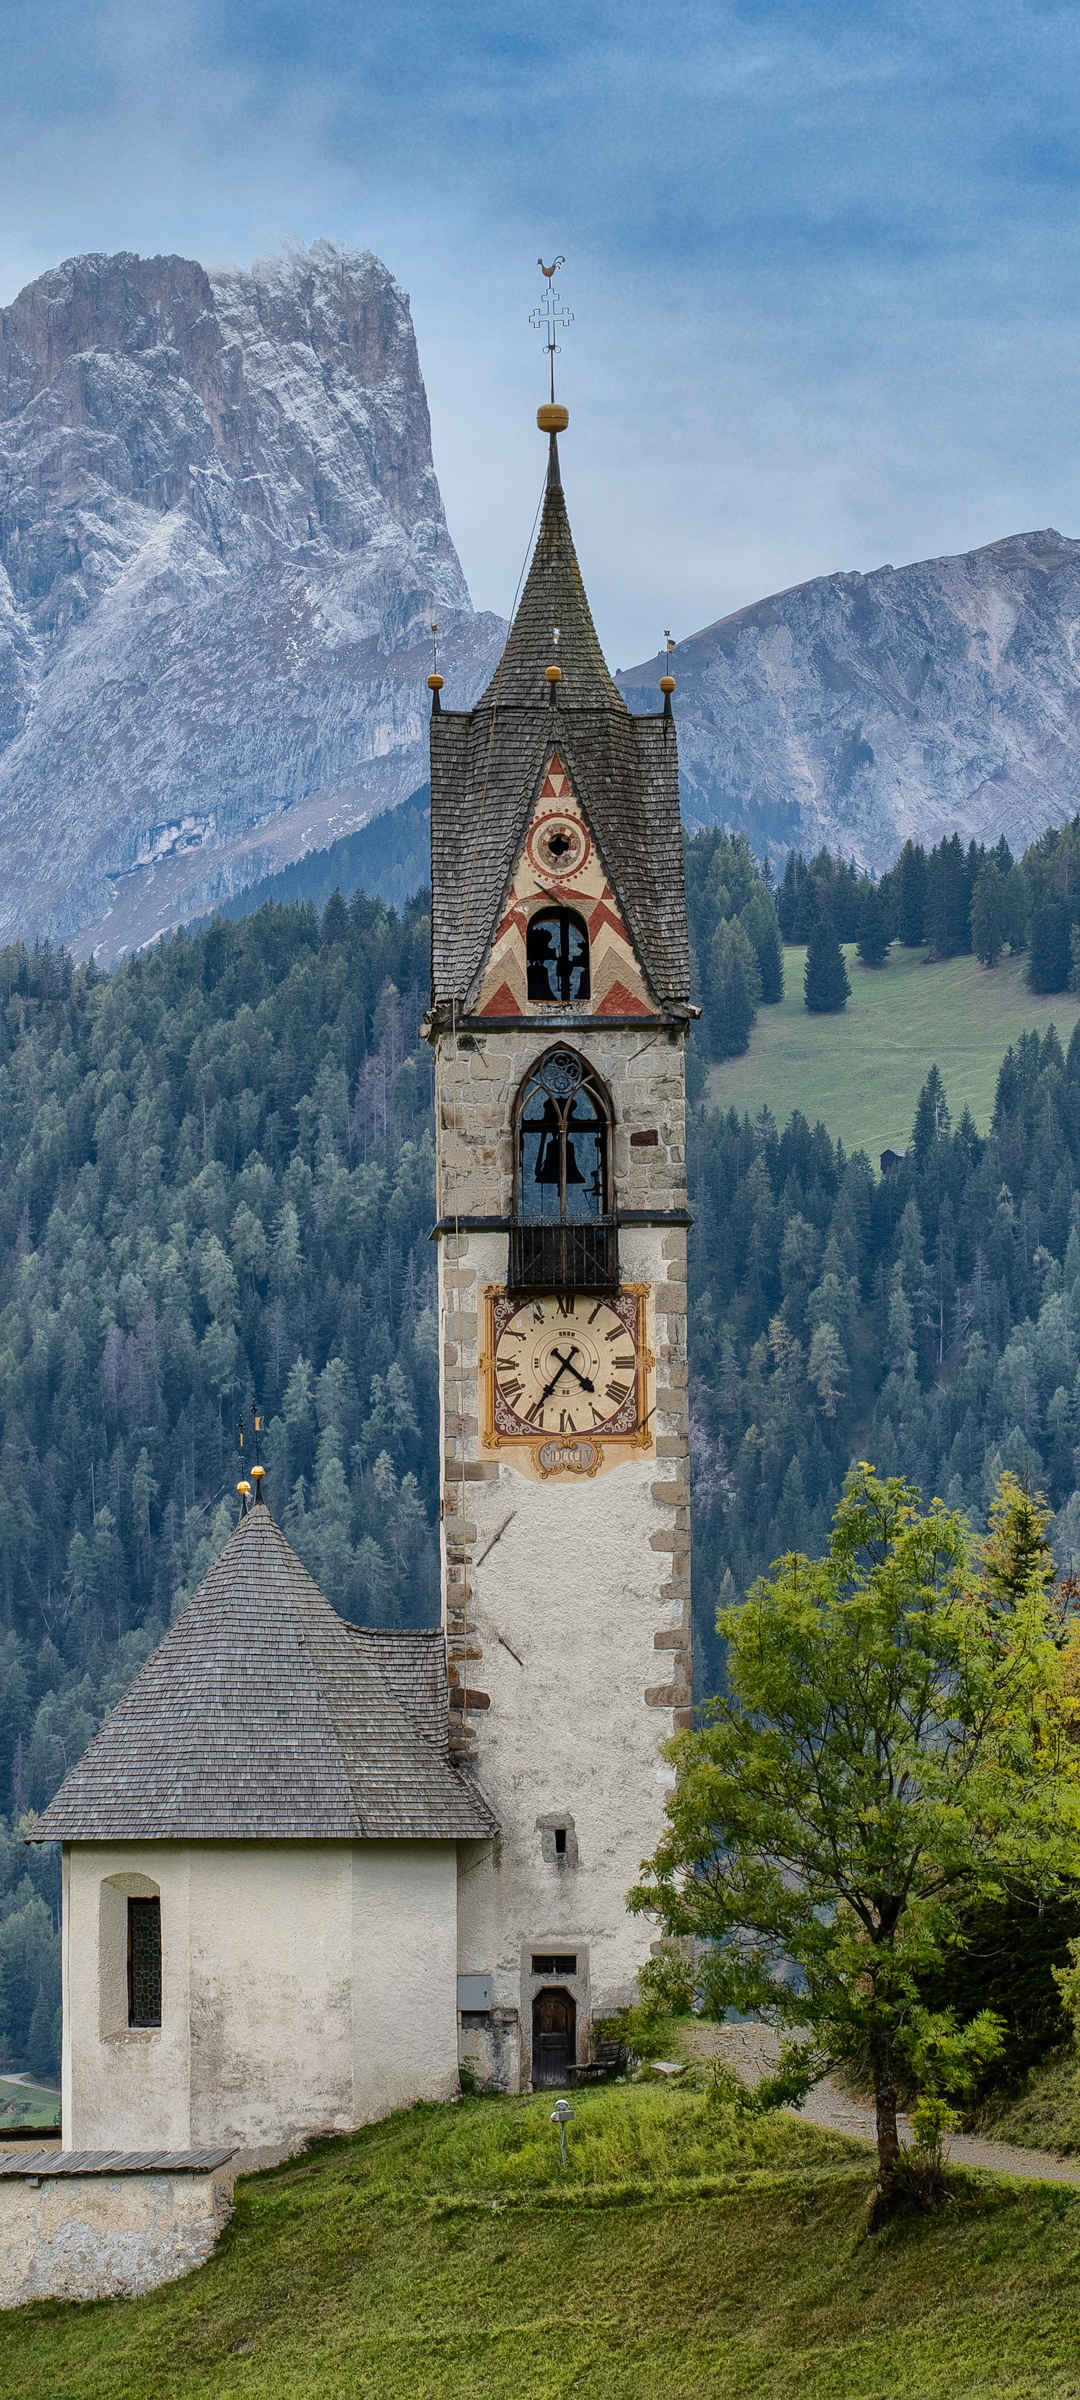 外国乡村教堂钟楼风景手机壁纸-